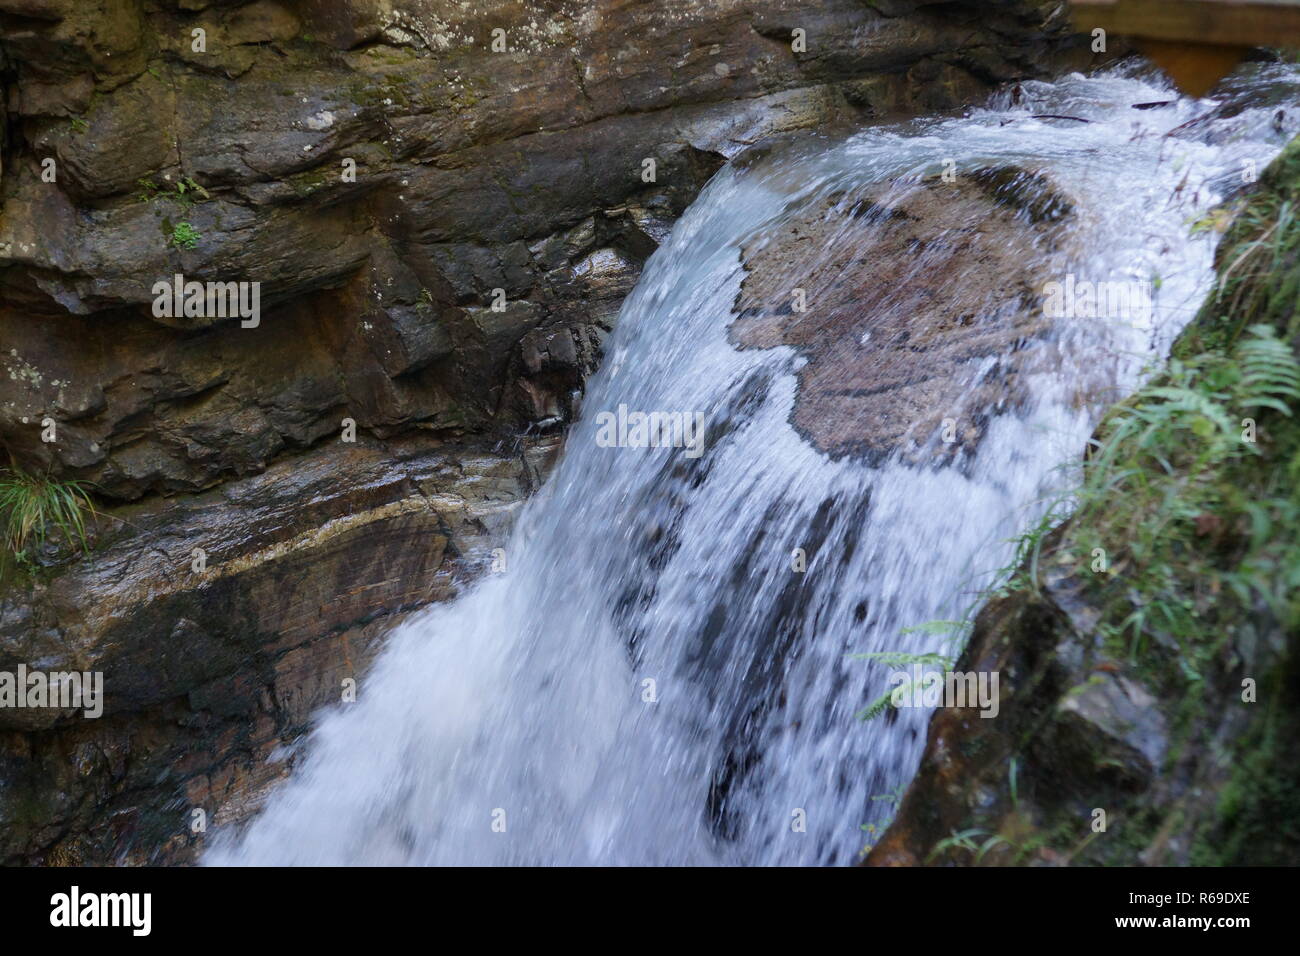 khopoli waterfall (ring) - YouTube